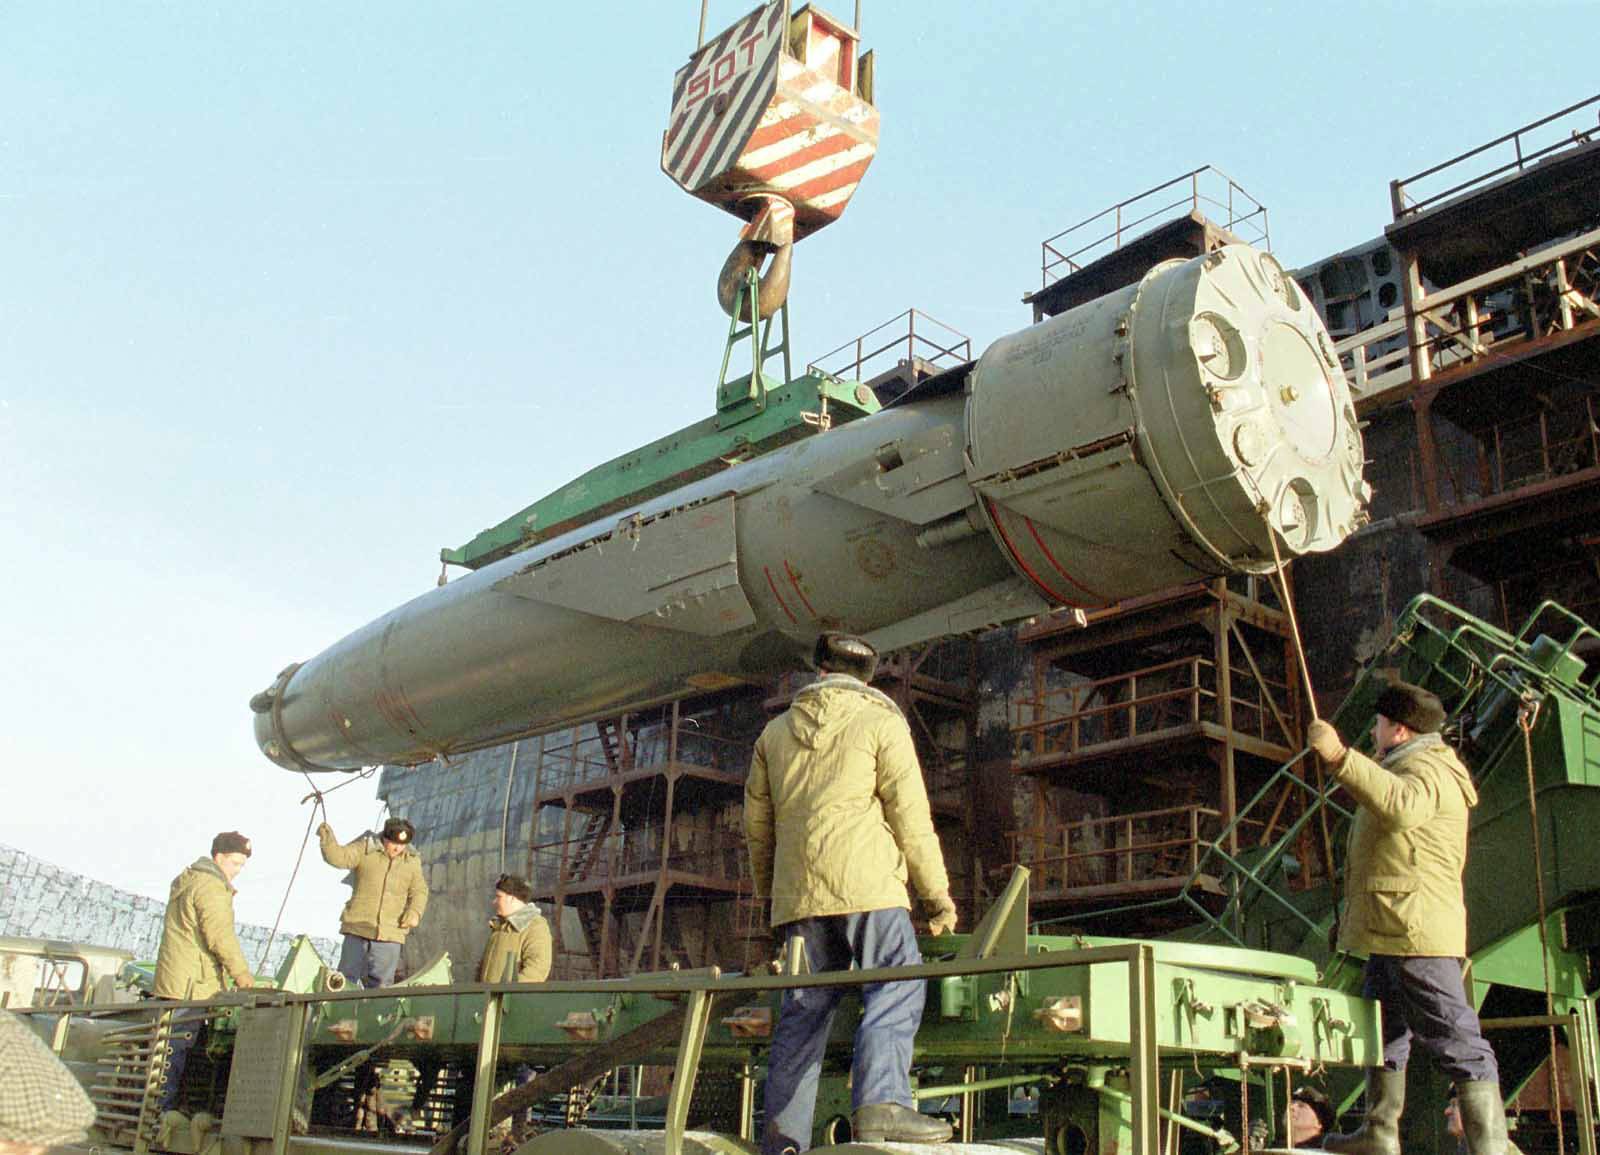 Пкр п-700 комплекса ракетного оружия «гранит» — оружие россии (vladimir m) — newsland